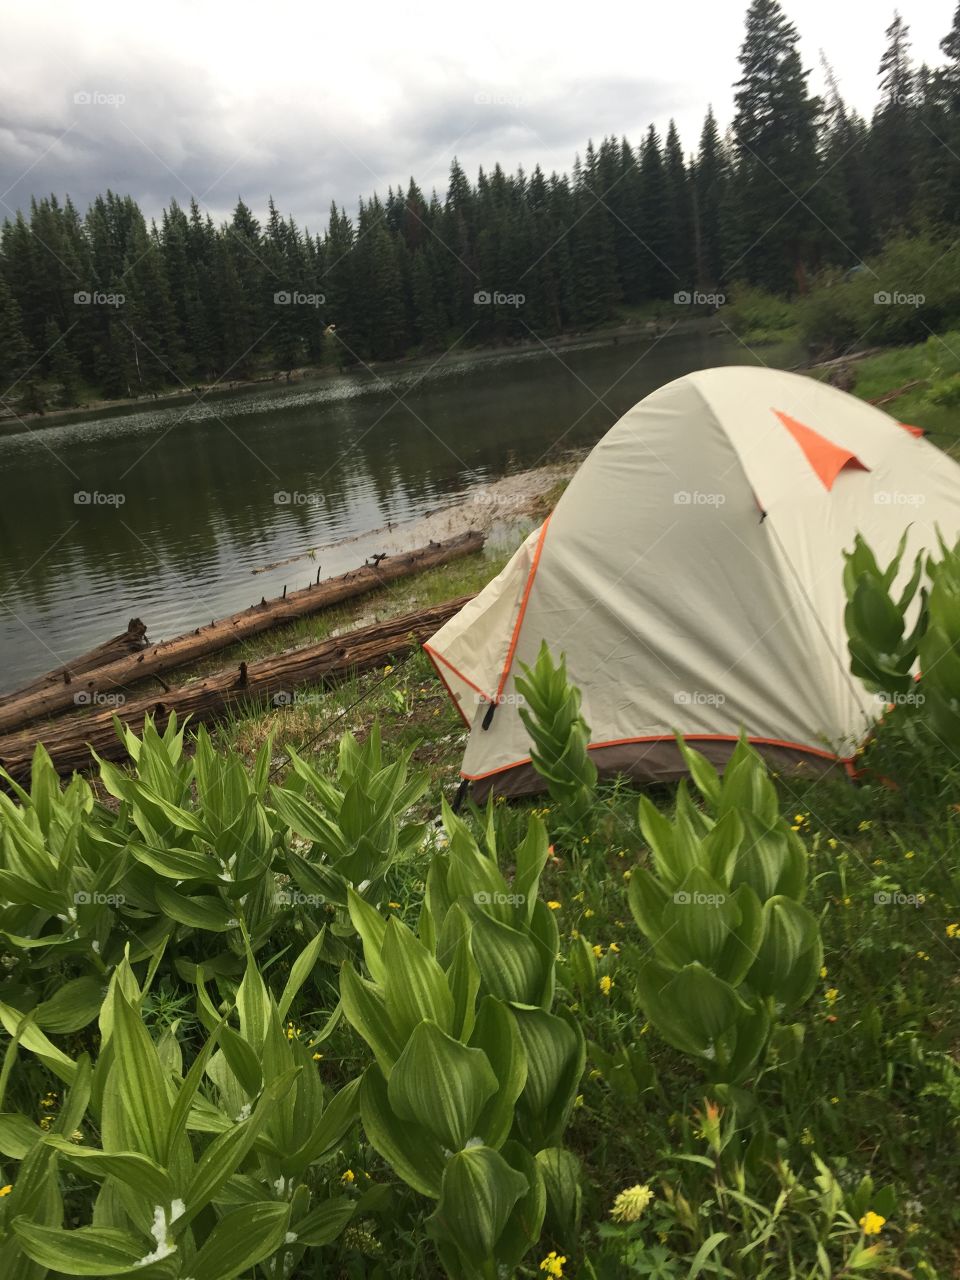 Colorado camping 